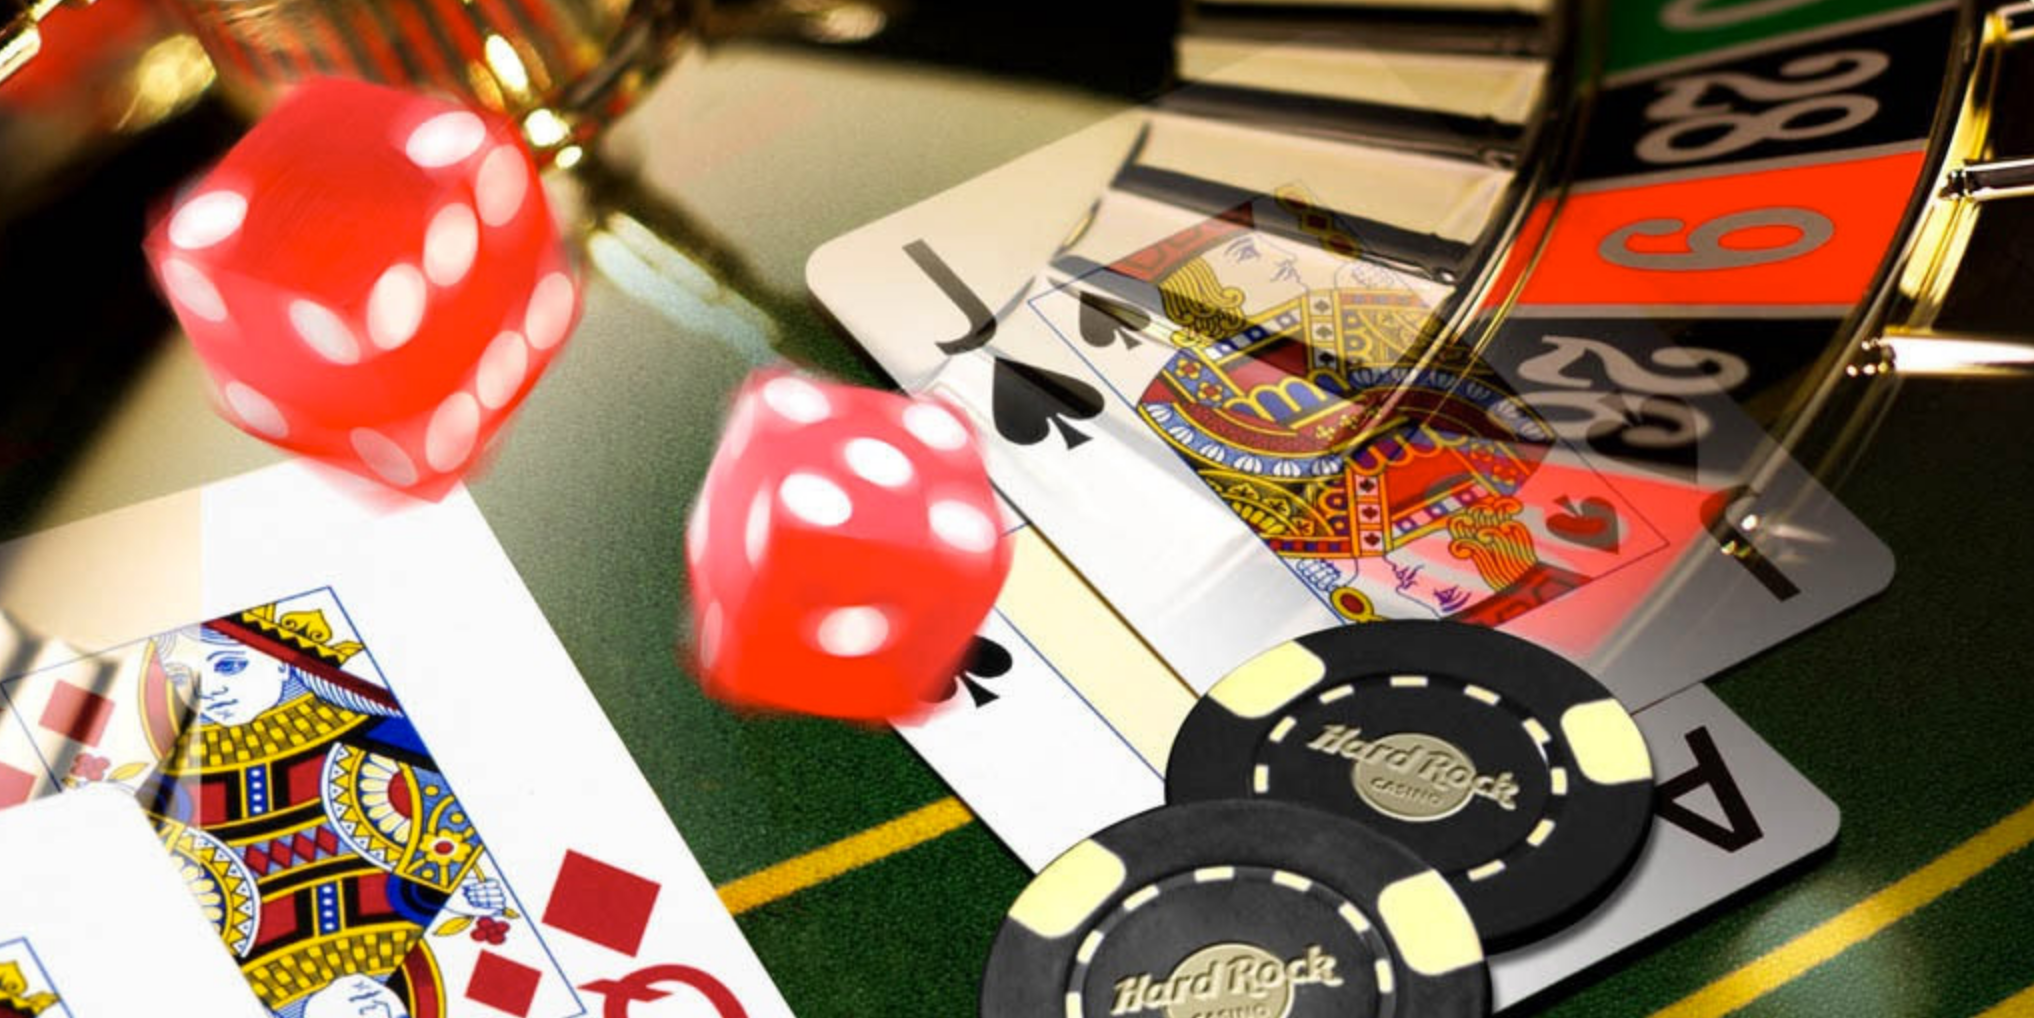 Apprenez à casinos de manière persuasive en 3 étapes faciles